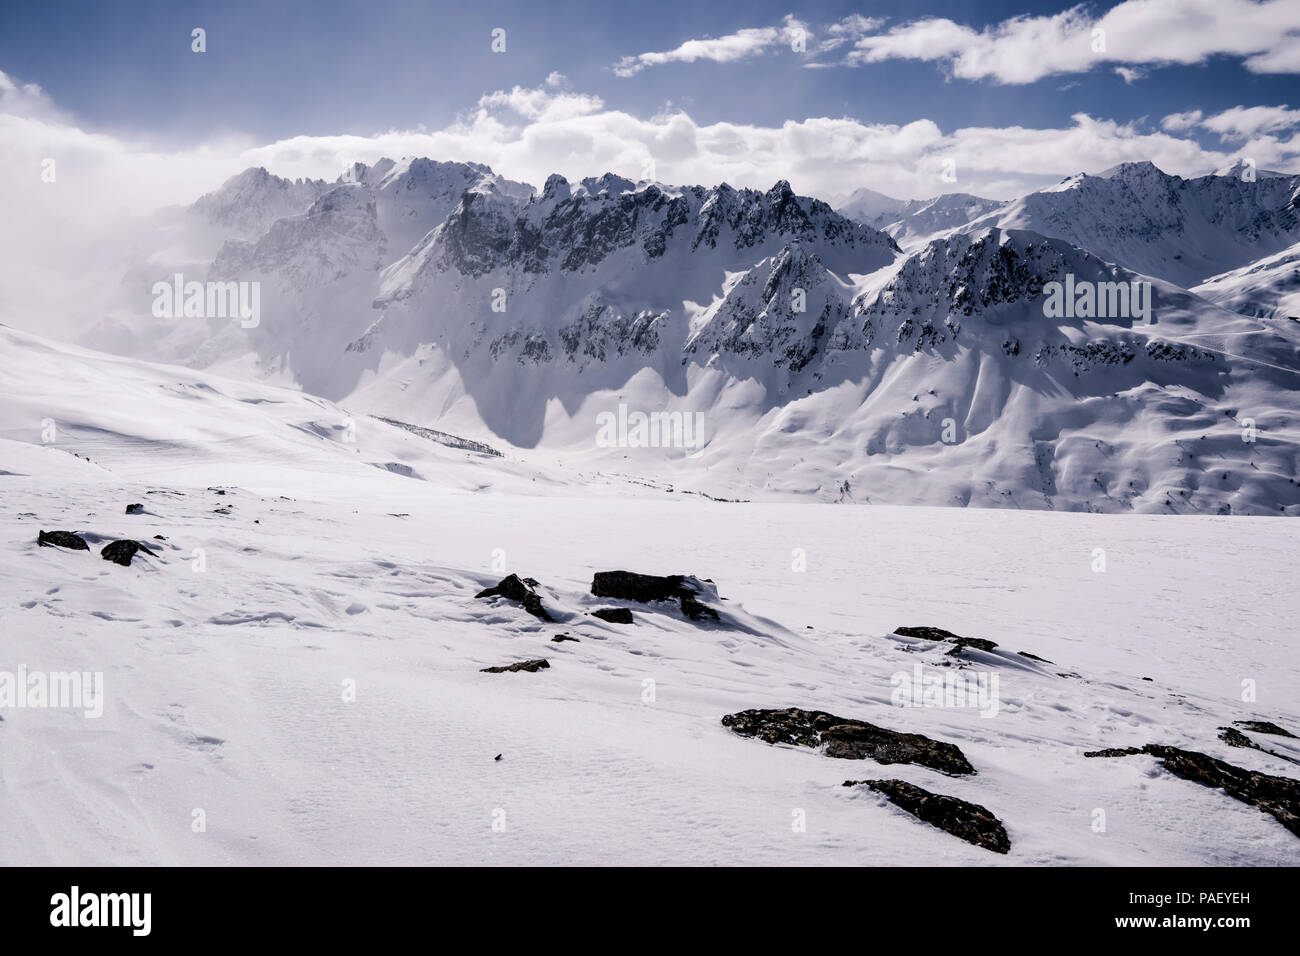 J'ai arrêté le ski et détendus en haut du Grand Plateau dans les Alpes françaises, et d'obtenir cette vue. Banque D'Images